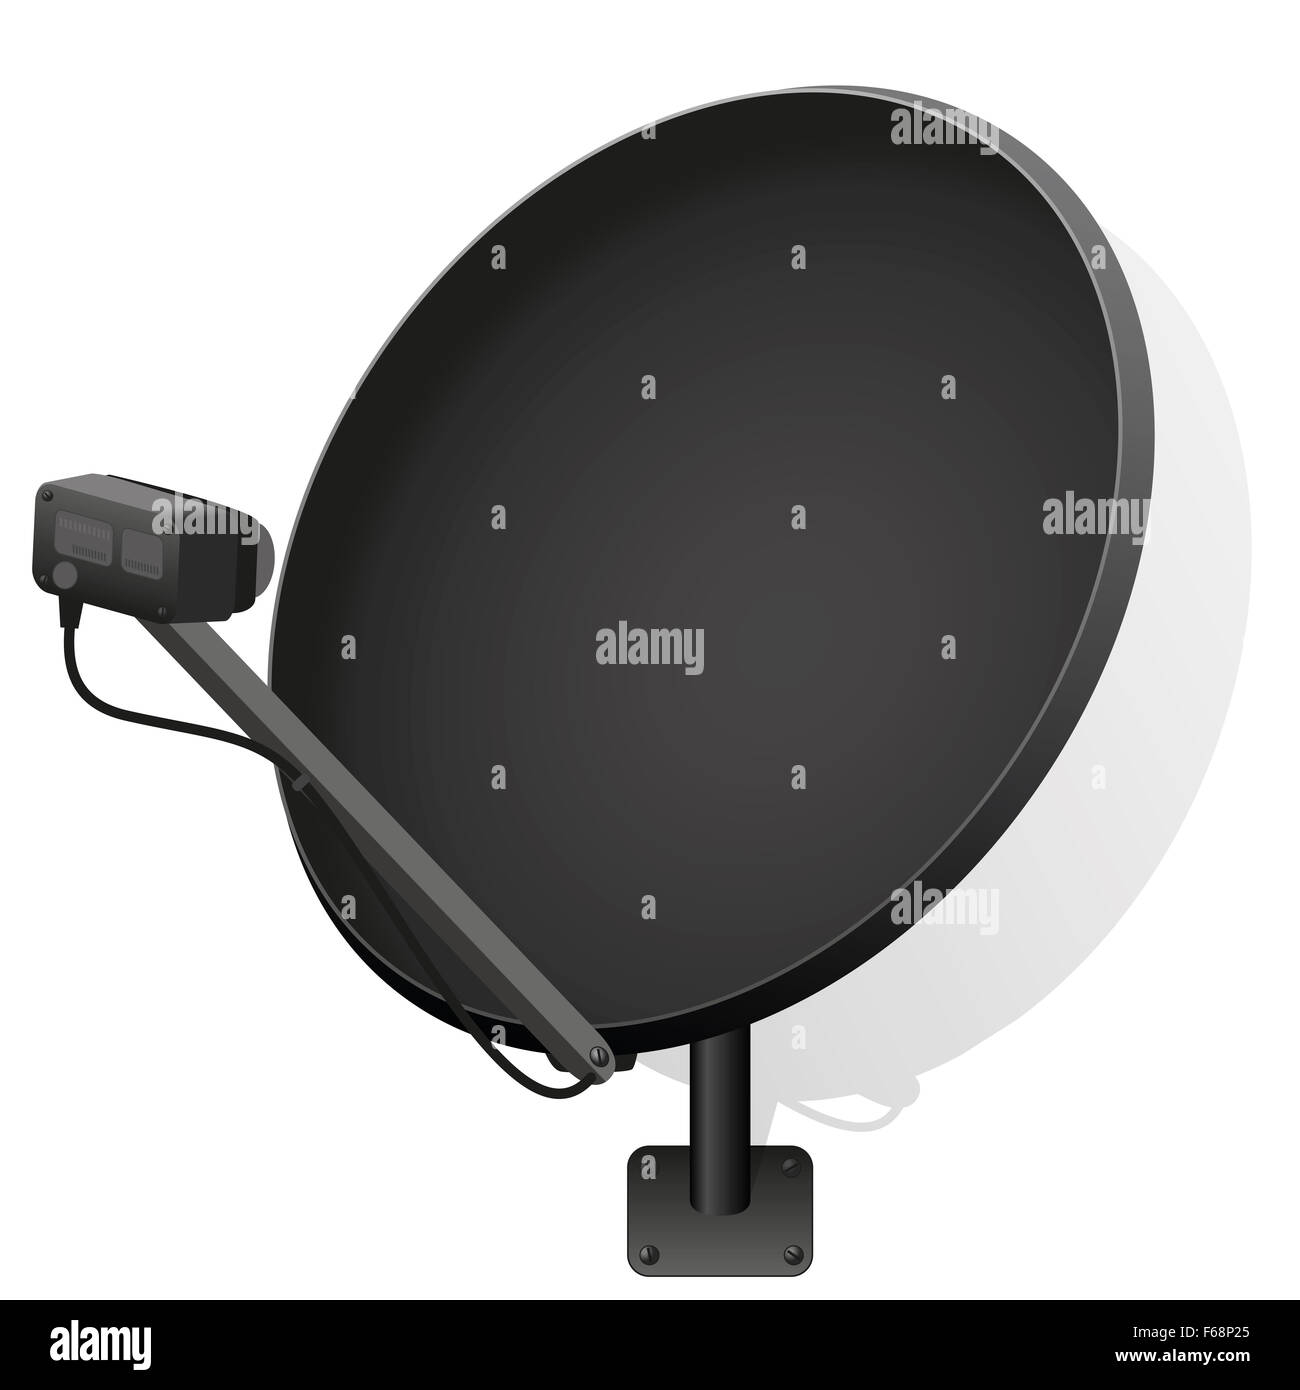 Antenne satellite noir pour recevoir des signaux de télévision, radio,  internet. Illustration sur fond blanc Photo Stock - Alamy